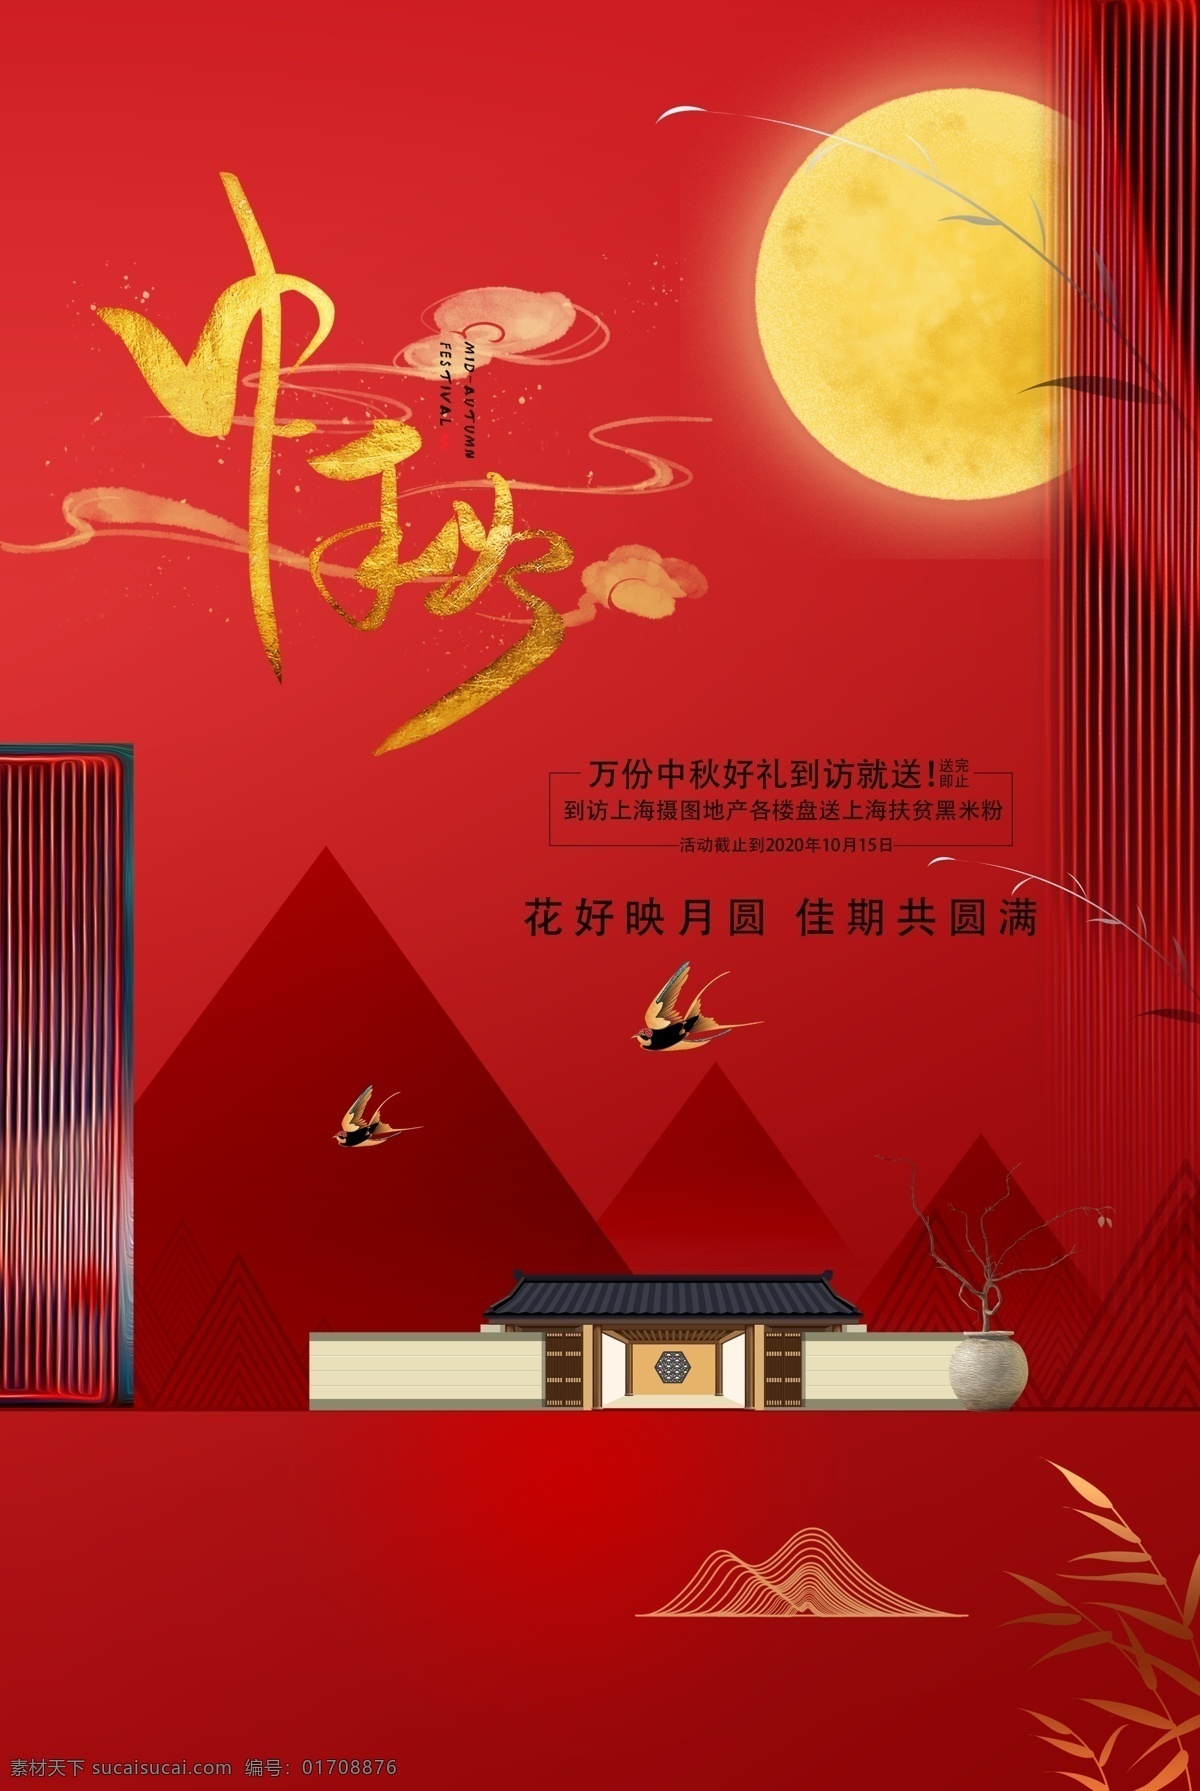 中秋 传统节日 促销活动 海报 传统 节日 促销 活动 传统节日海报